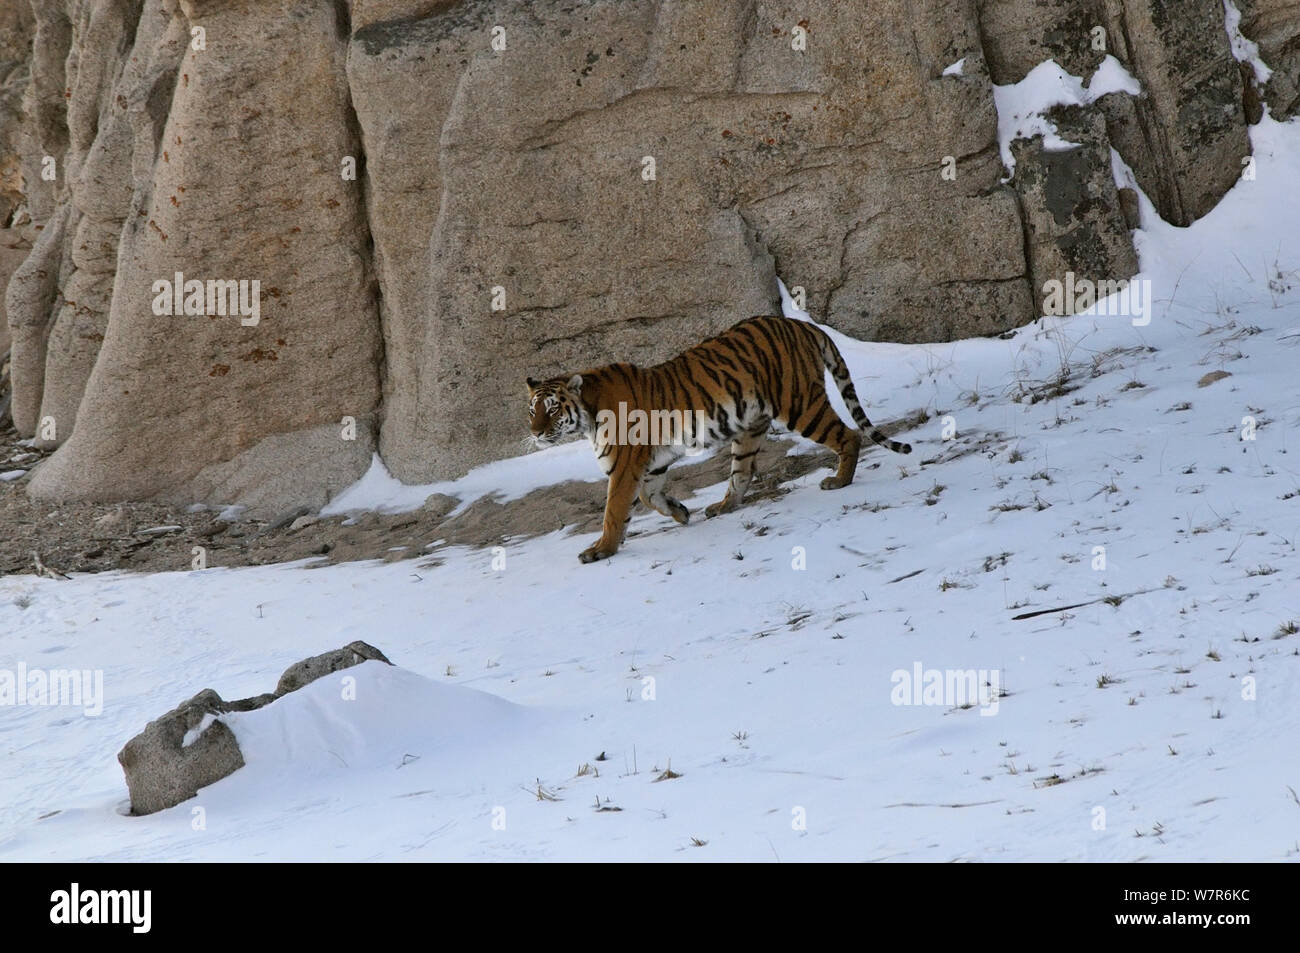 / Amur tigre siberiana (Panthera tigris altaica) femmina nel selvaggio, camminando giù per una collina, Lazovskiy zapovednik / Lazo riserva area protetta, Primorskiy krai, Far Eastern Russia, Febbraio 2012 Foto Stock